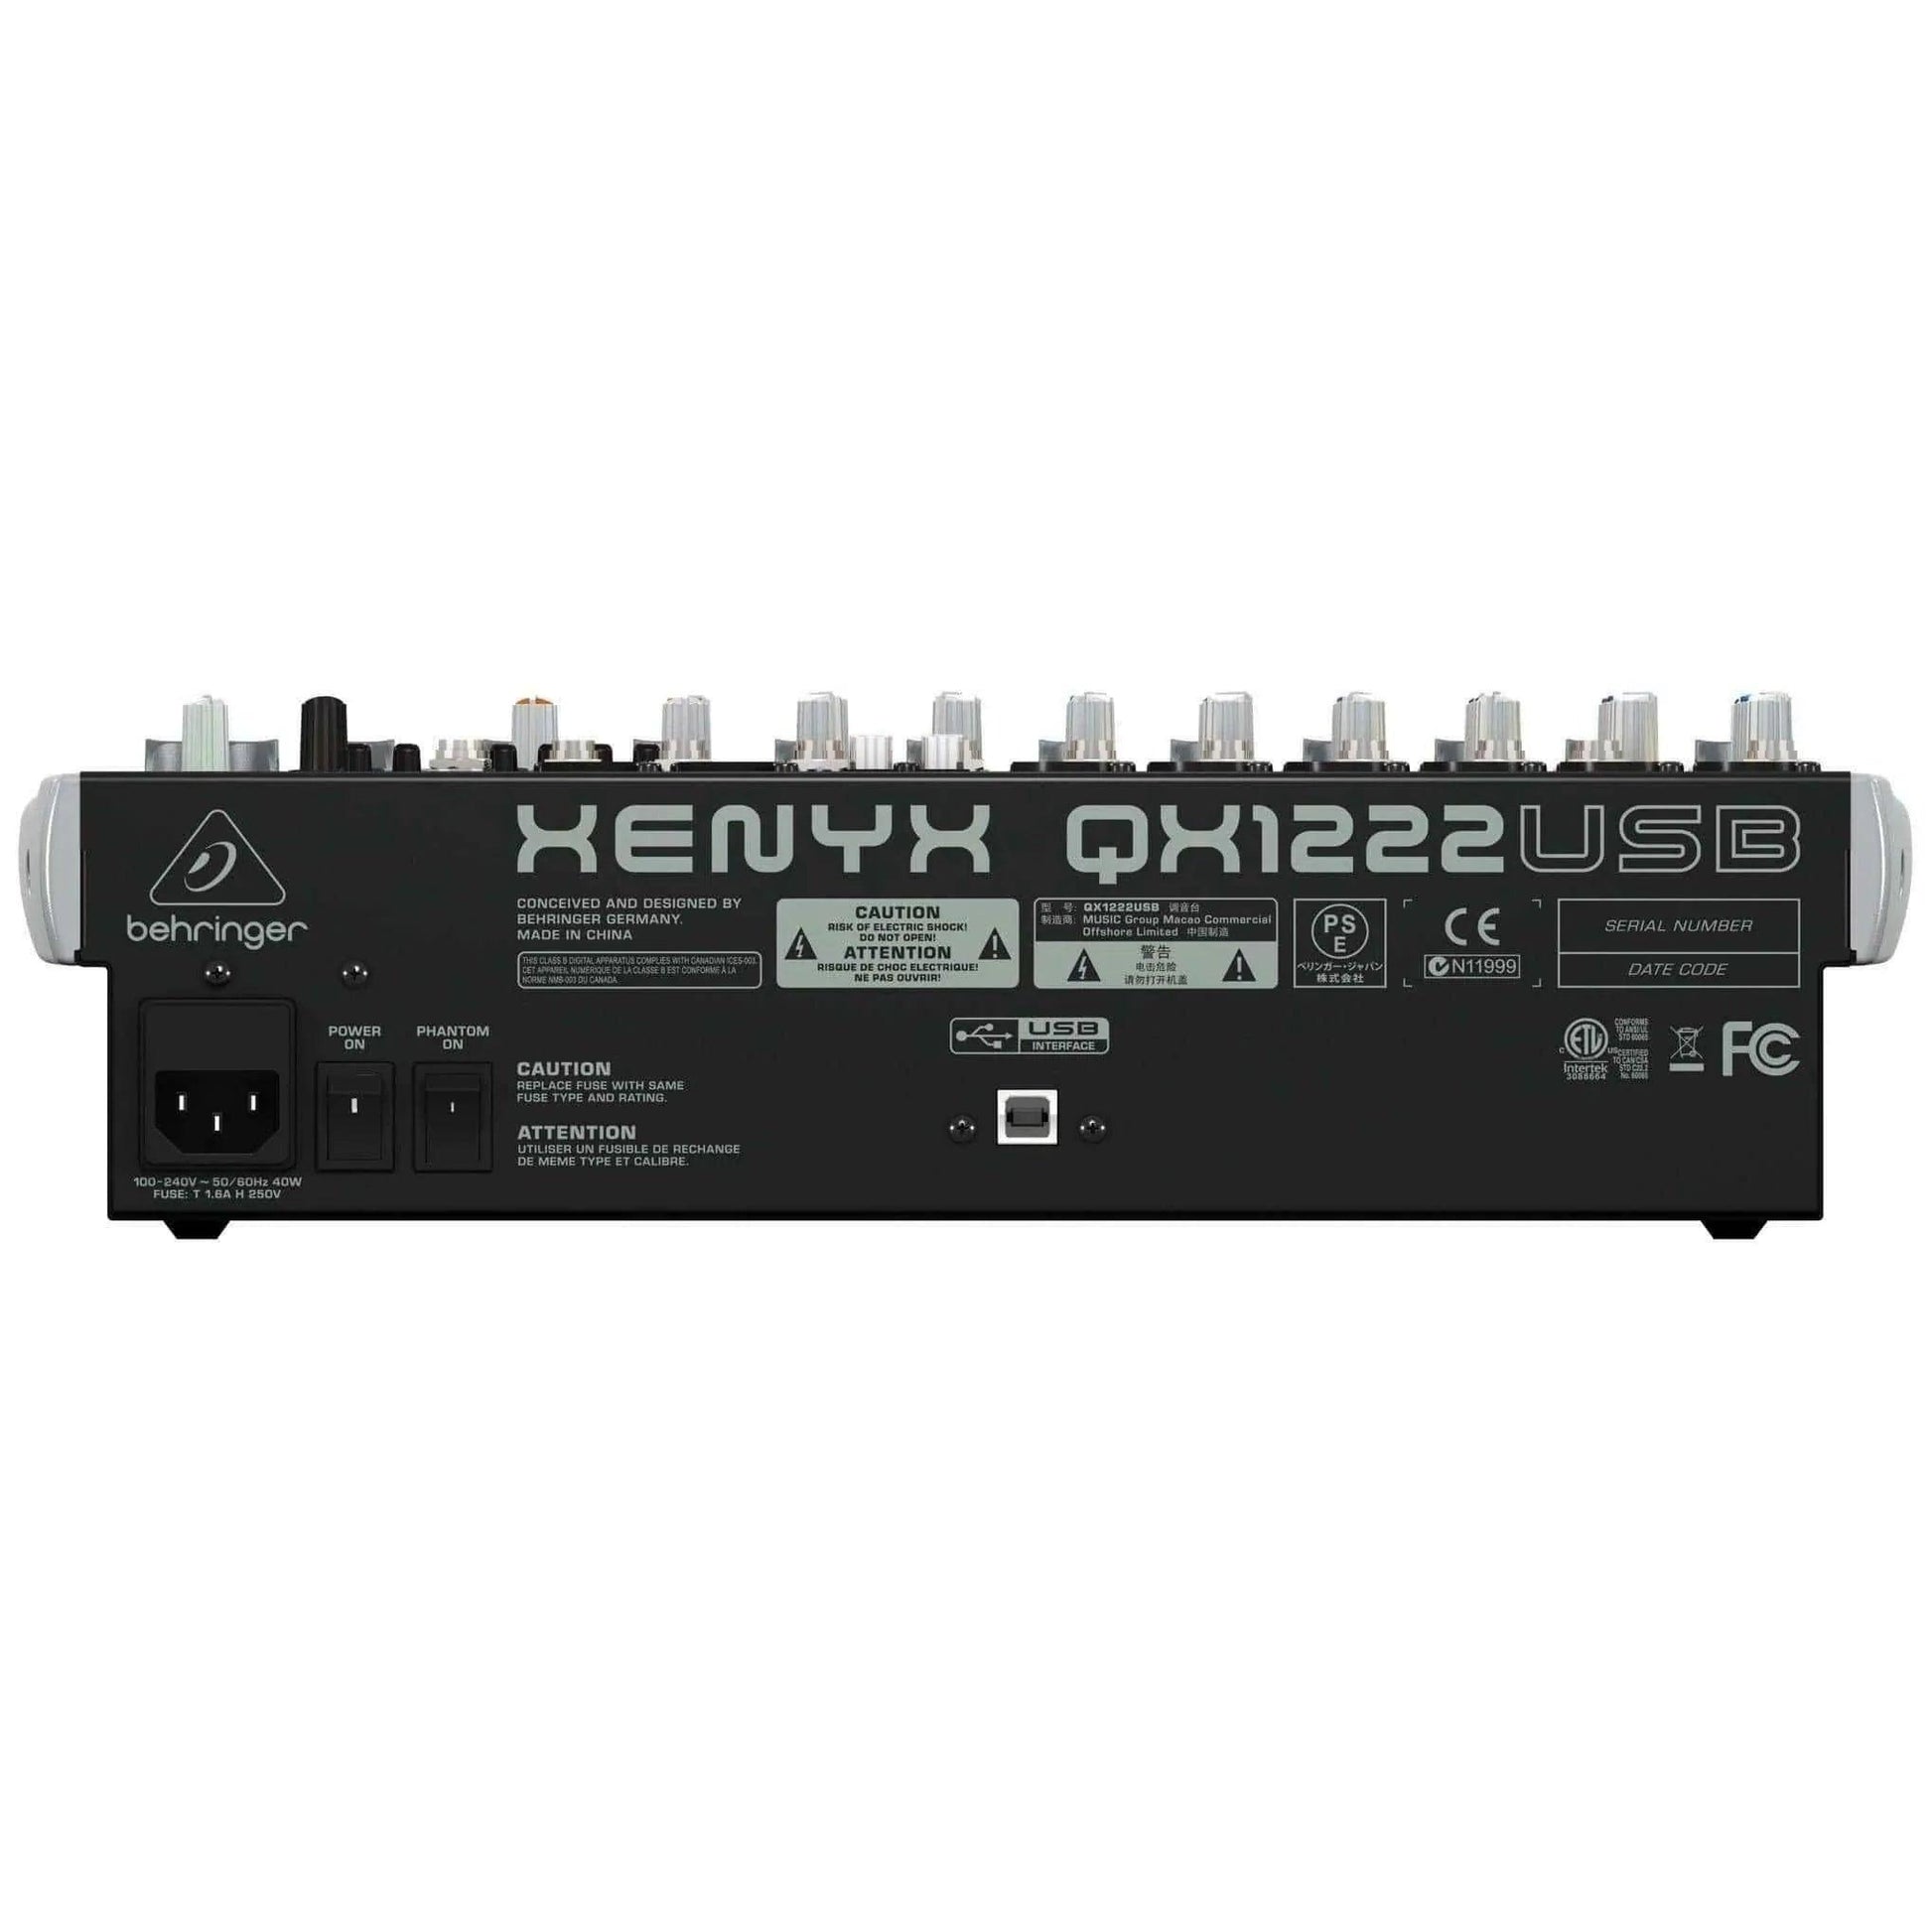 Behringer Xenyx QX1222USB Mixer